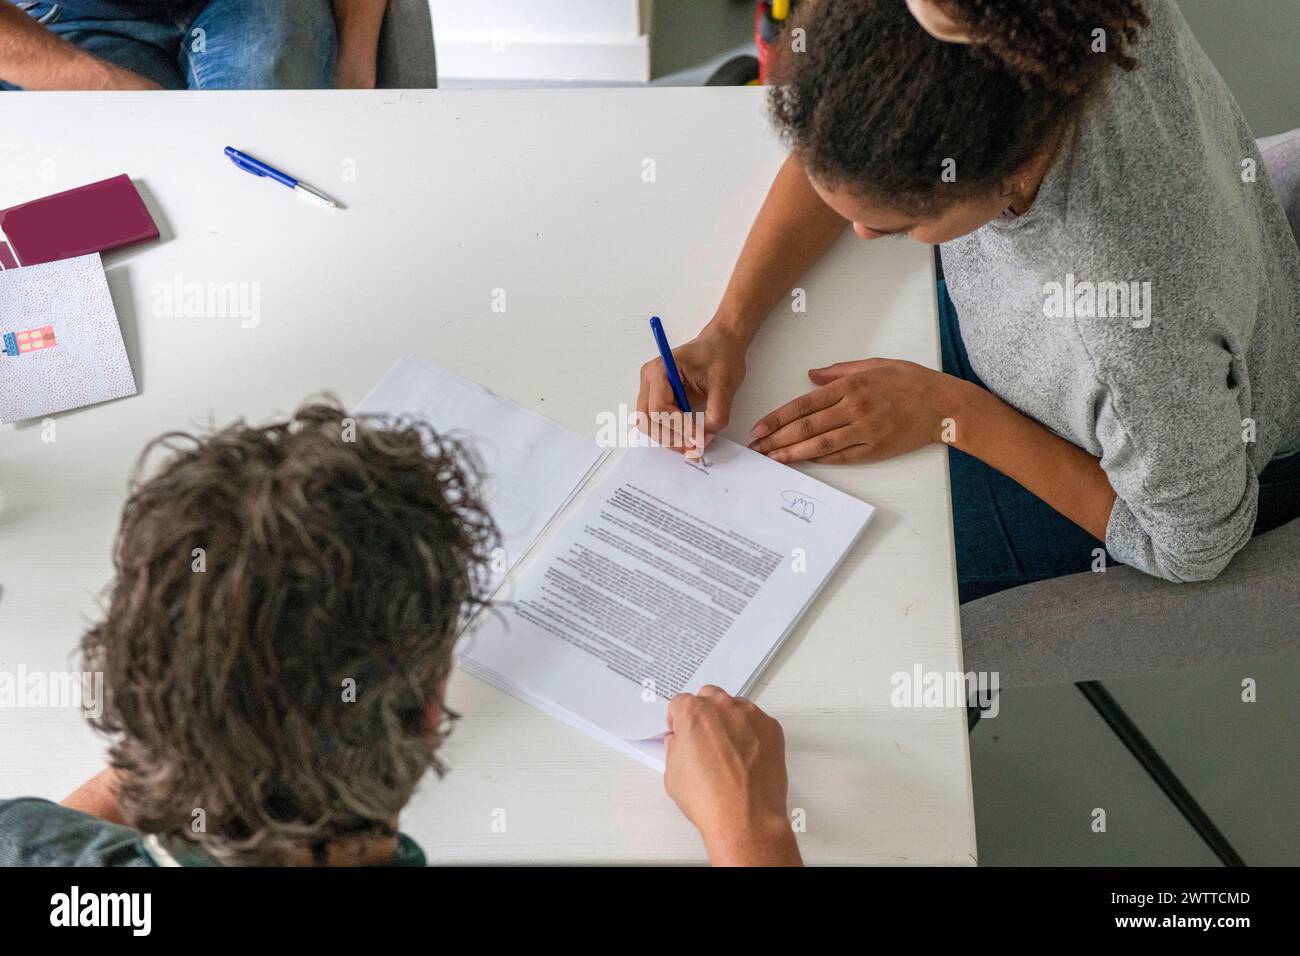 Deux personnes collaborant sur un document à une table blanche. Banque D'Images